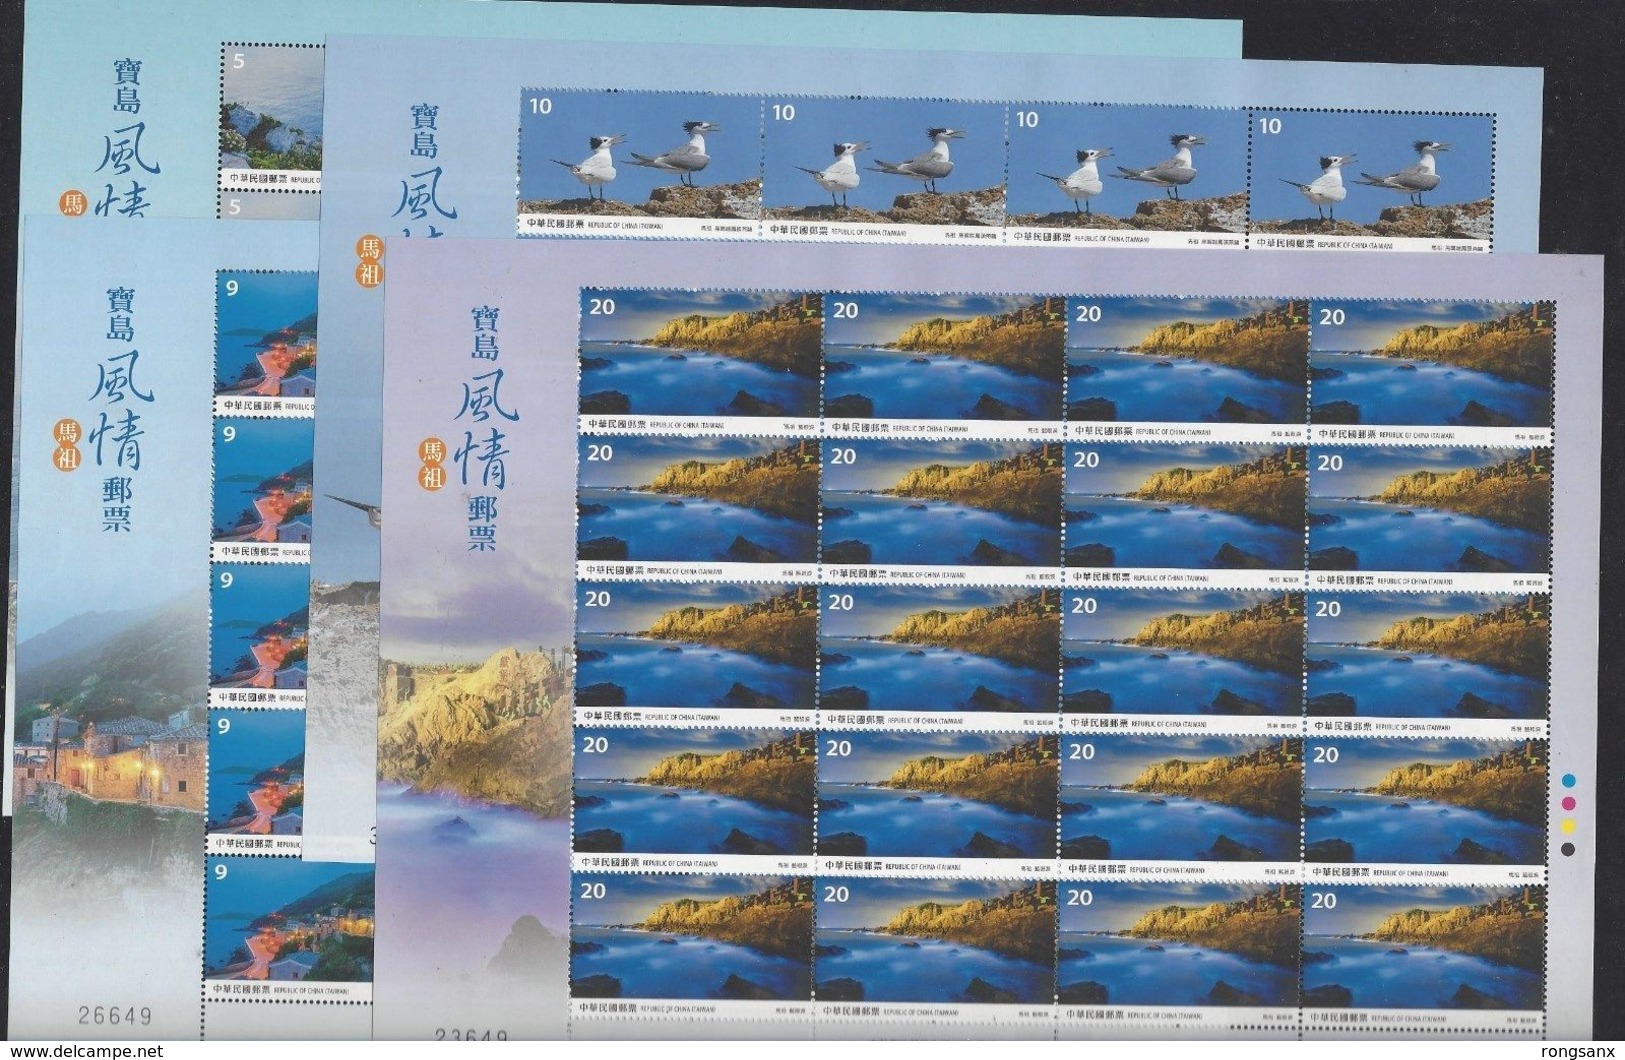 2017 TAIWAN VIEWS OF MAZU STAMP F-SHEET 4V BIRDS LIGHTHOUSES - Blocks & Kleinbögen